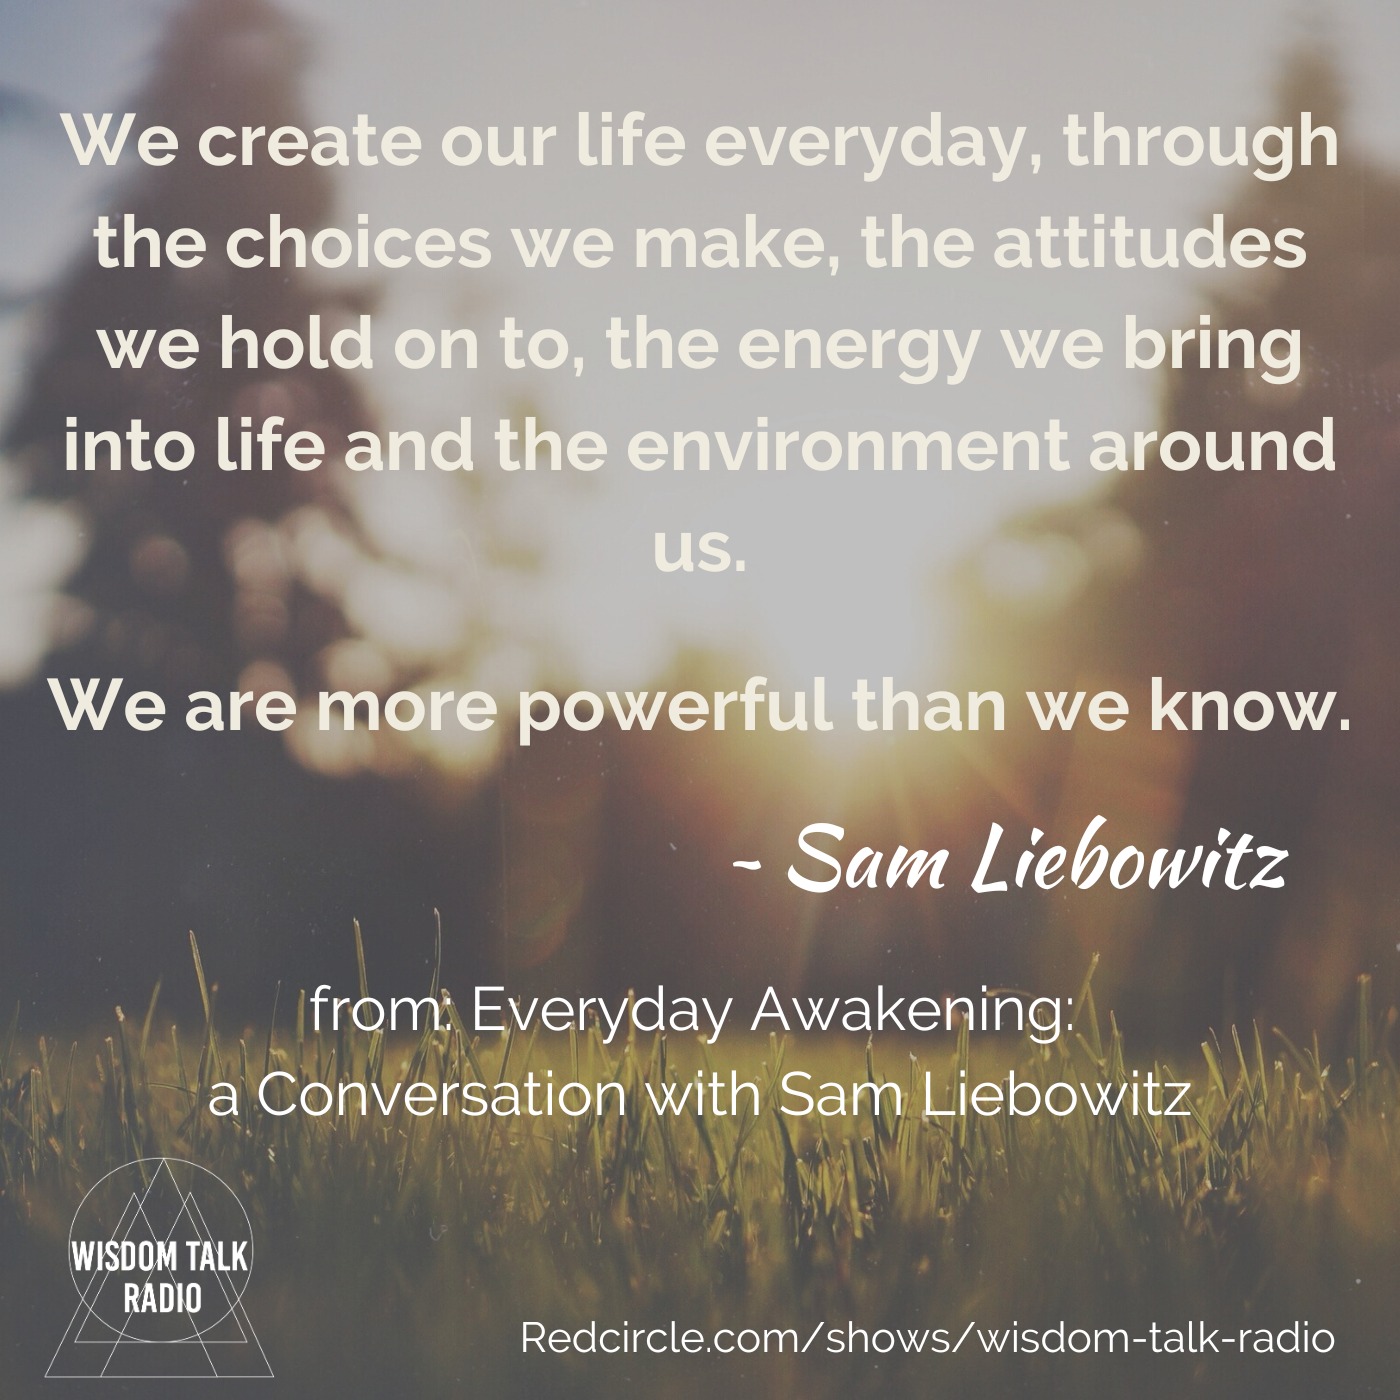 Everyday Awakening: A Conversation with Sam Liebowitz